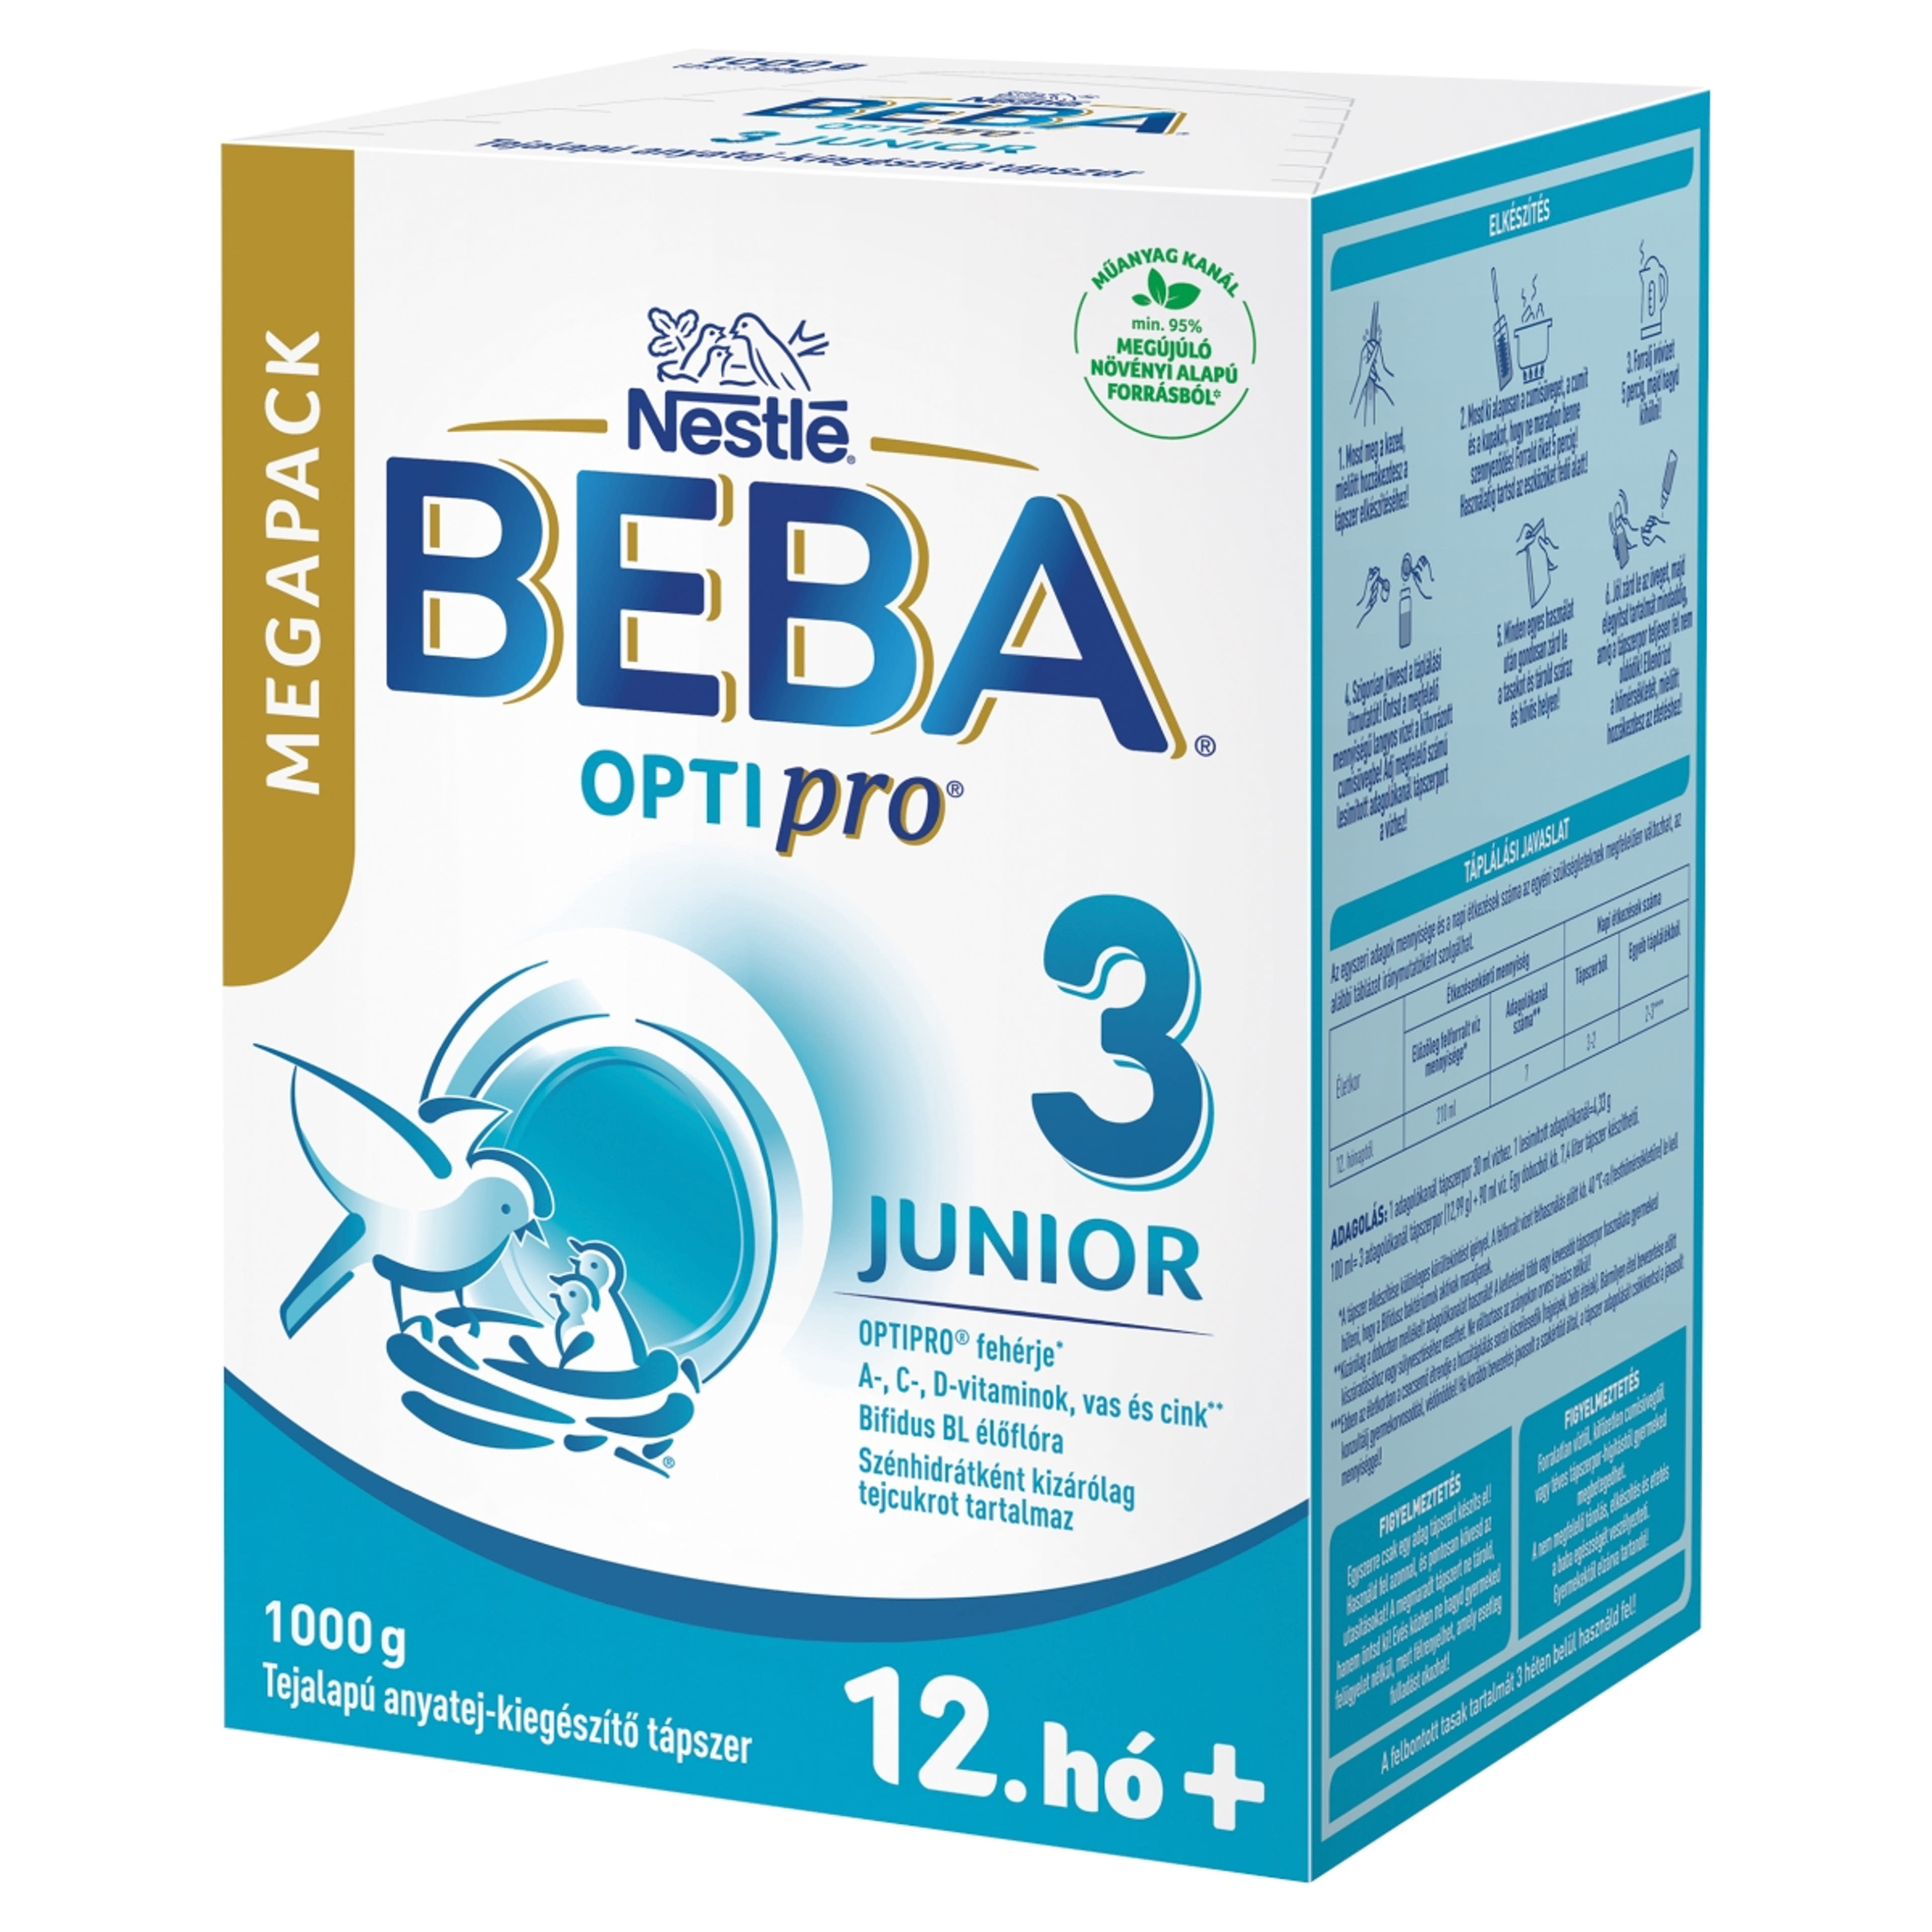 Beba Optipro 3 Junior tejalapú anyatej-kiegészítő tápszer 12 hónapos kortól - 1000 g-3